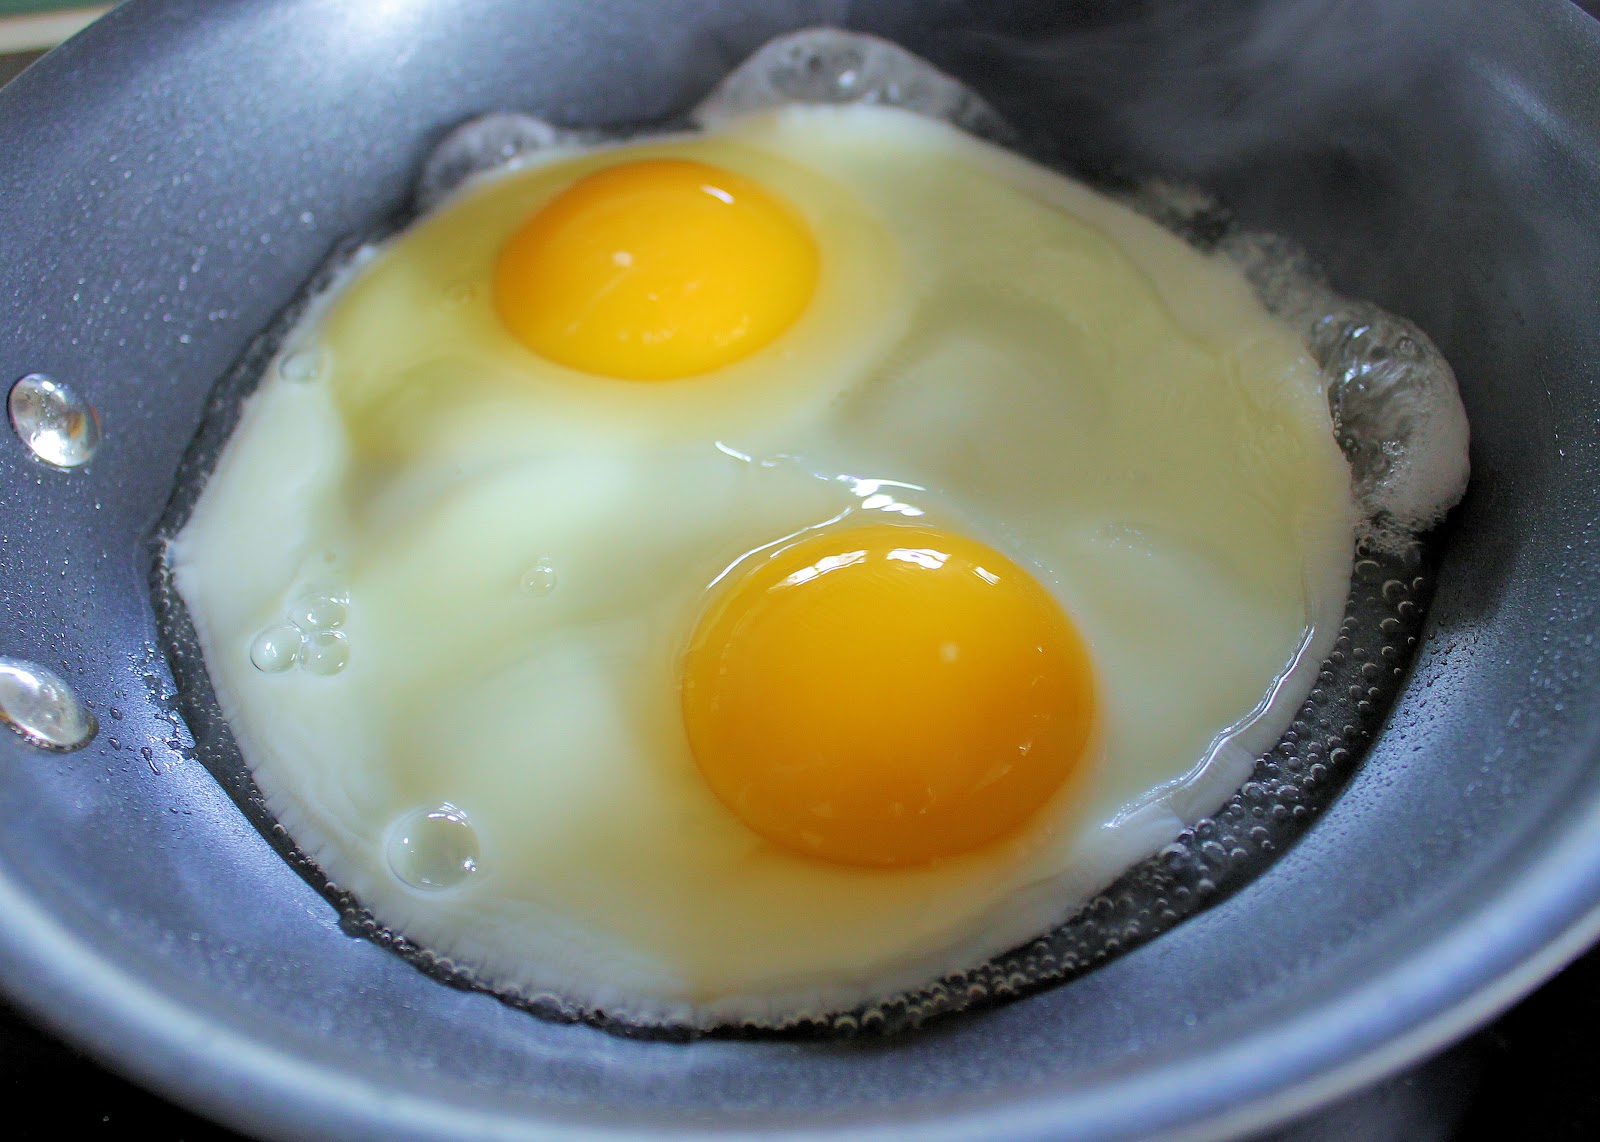 Eggs up. Санни Сайд ап яичница. Яичница без желтка. Яичница из желтков. Вторые блюда с яичным желтком.